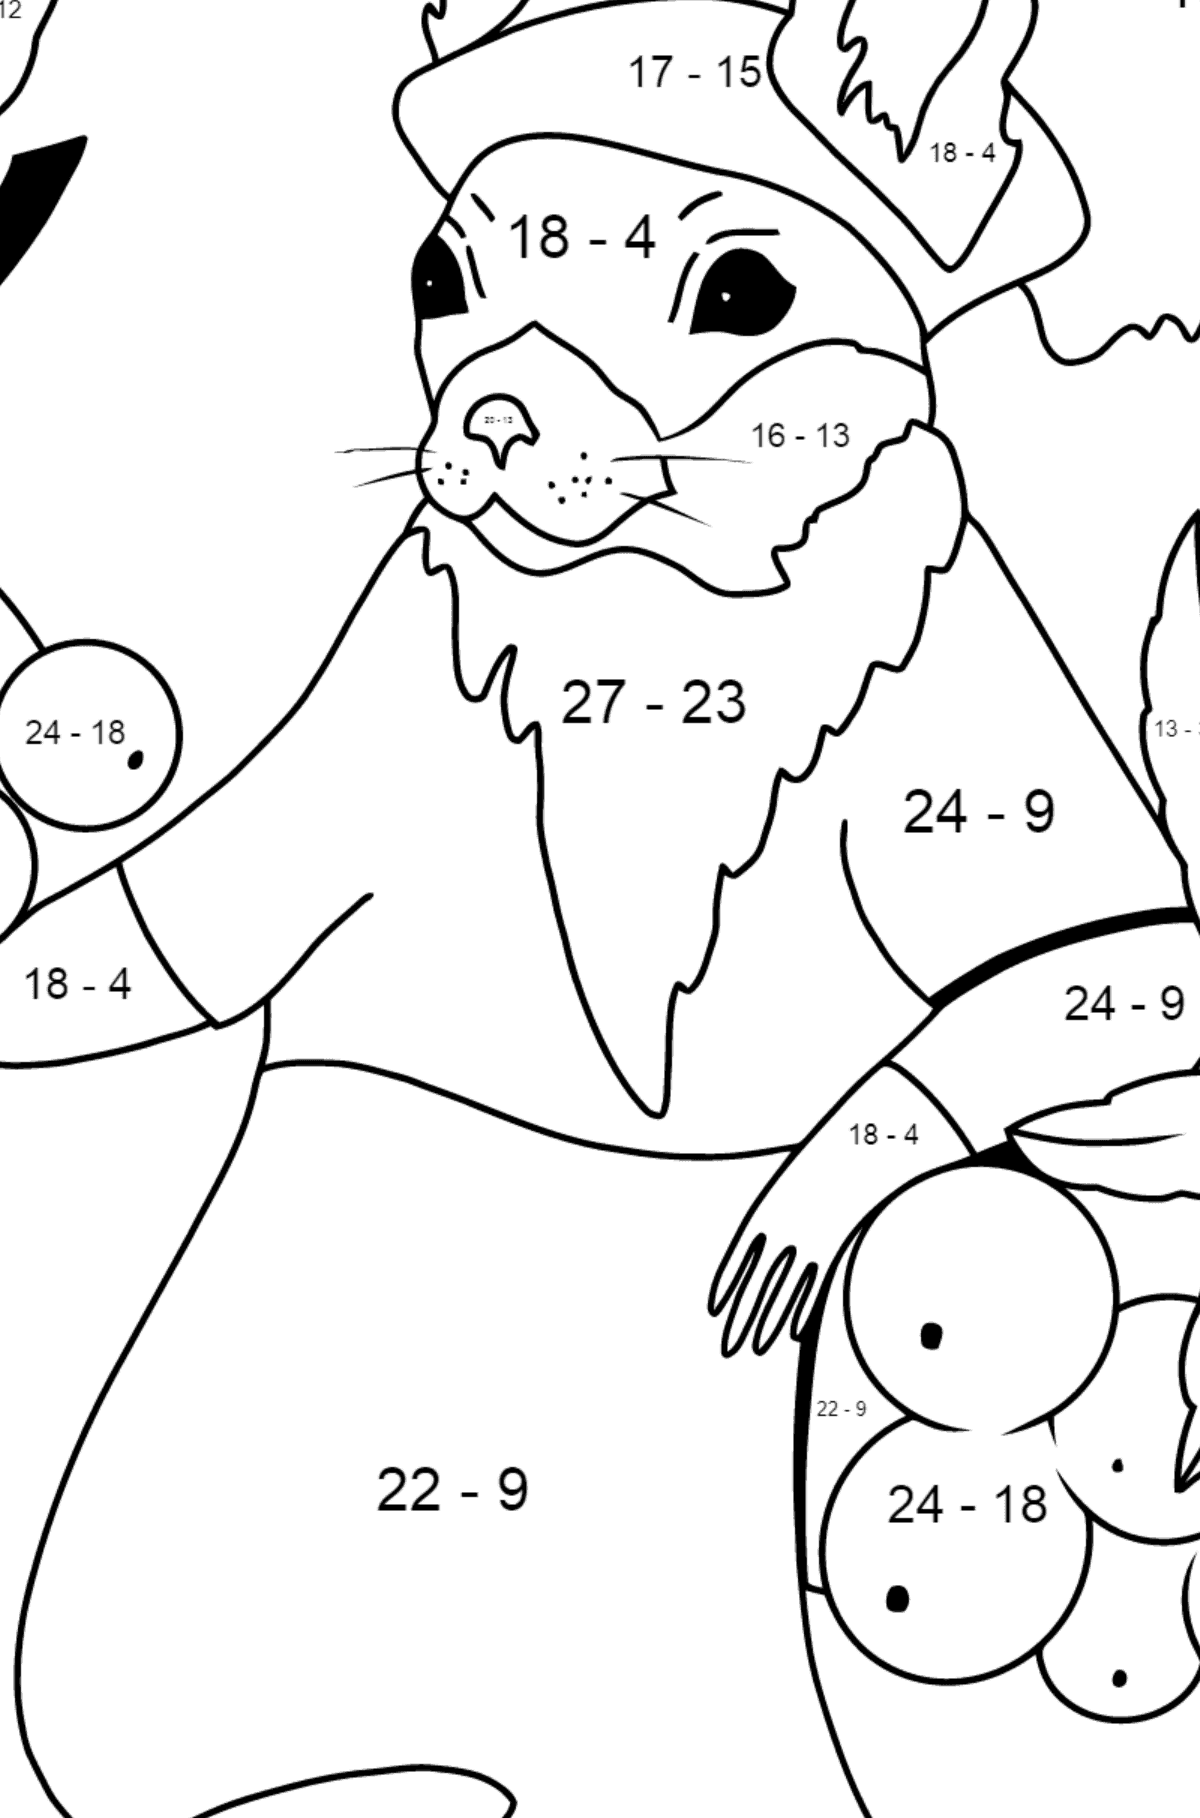 Herbstliche Ausmalbild - Ein Eichhörnchen mit roten Vogelbeeren - Mathe Ausmalbilder - Subtraktion für Kinder